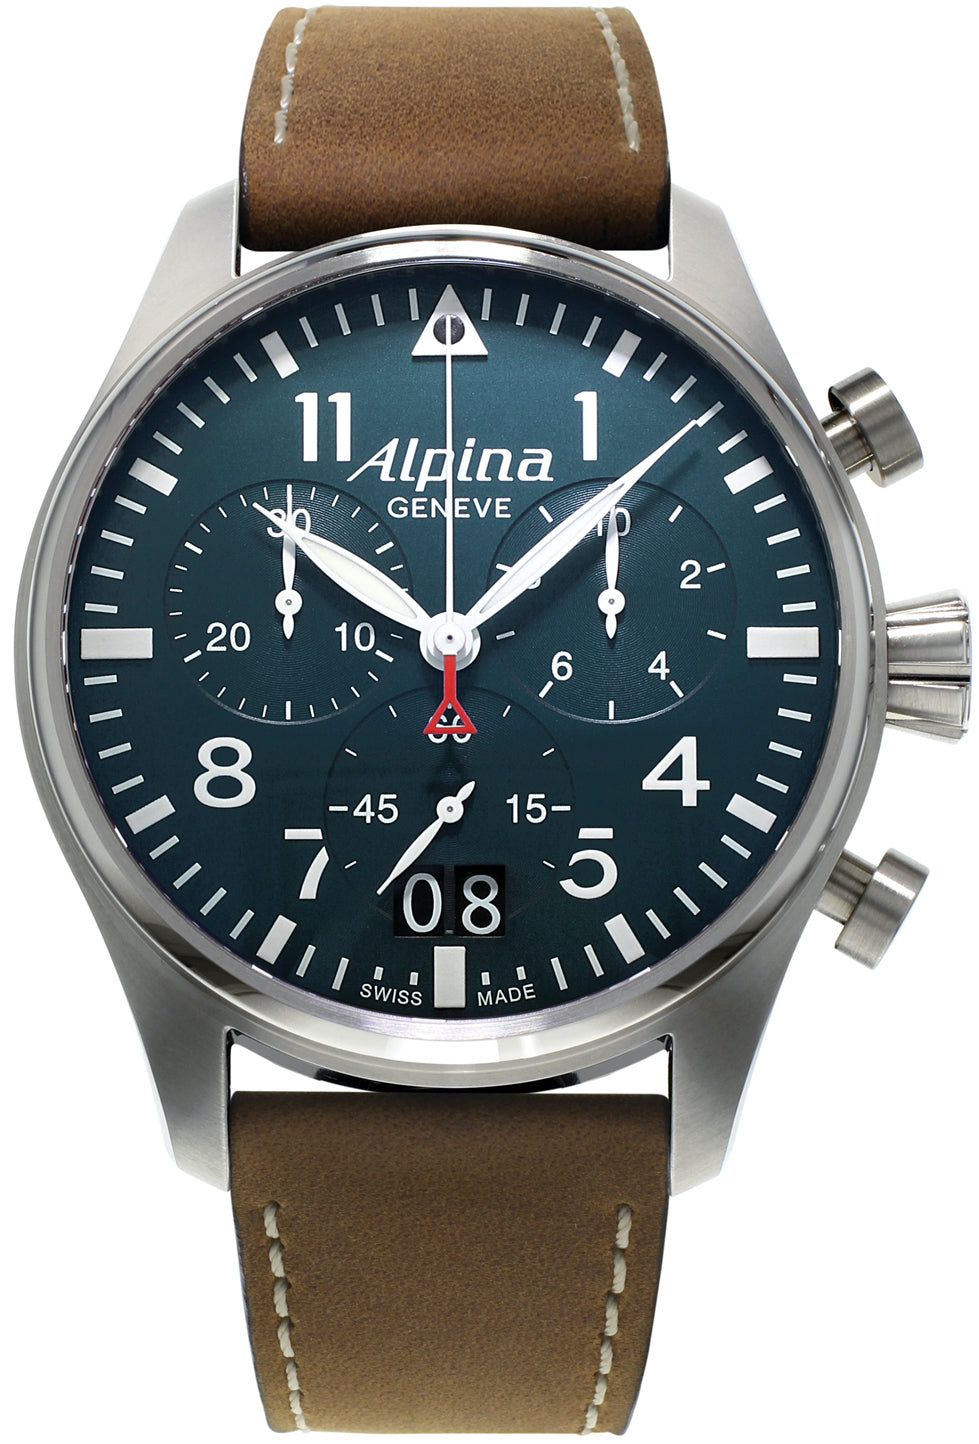 Photos - Wrist Watch Alpina Watch Startimer Pilot ALP-045 